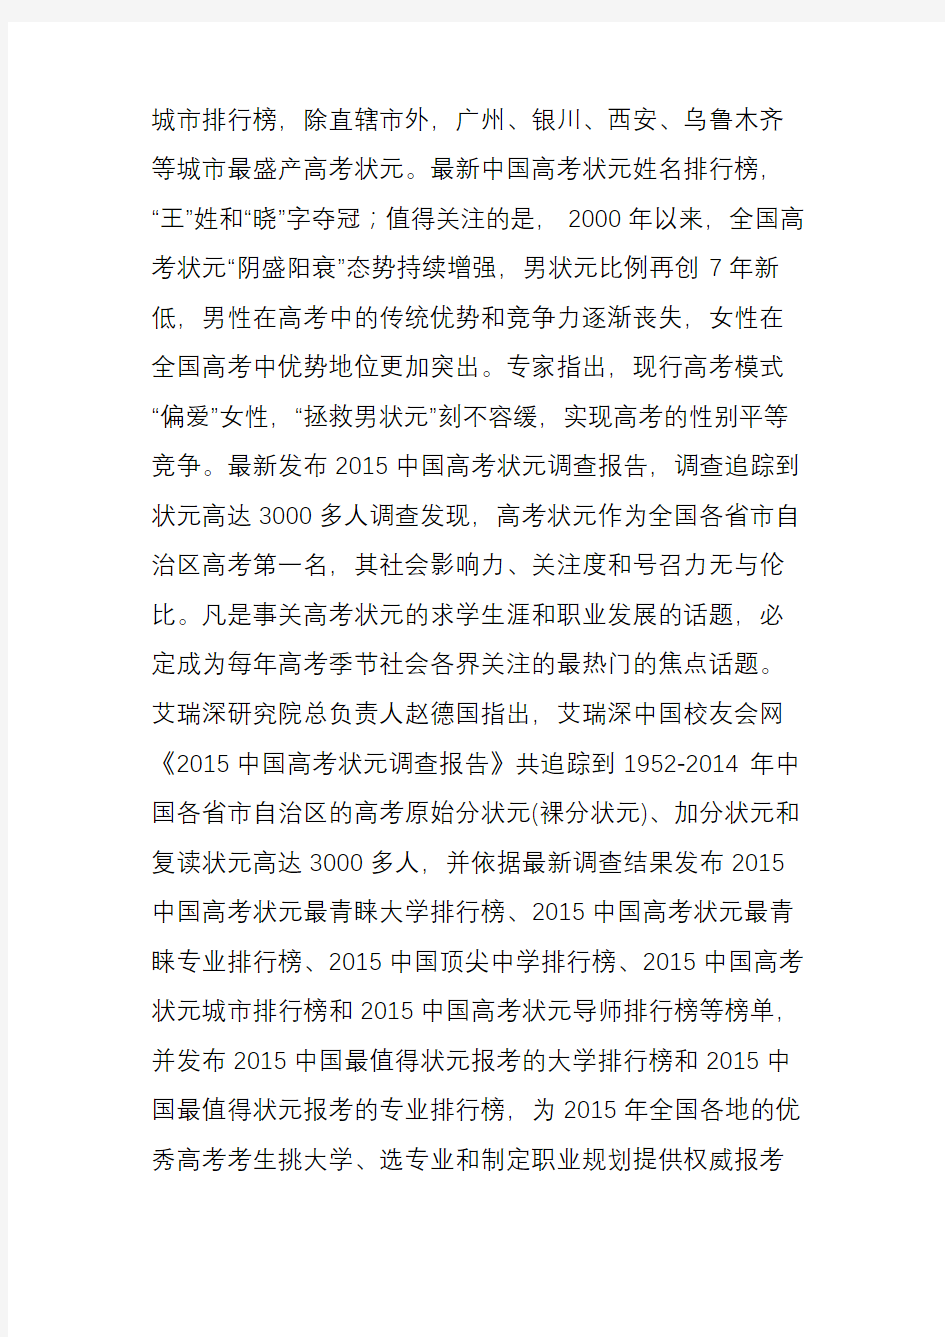 2015中国高考状元调查报告发布